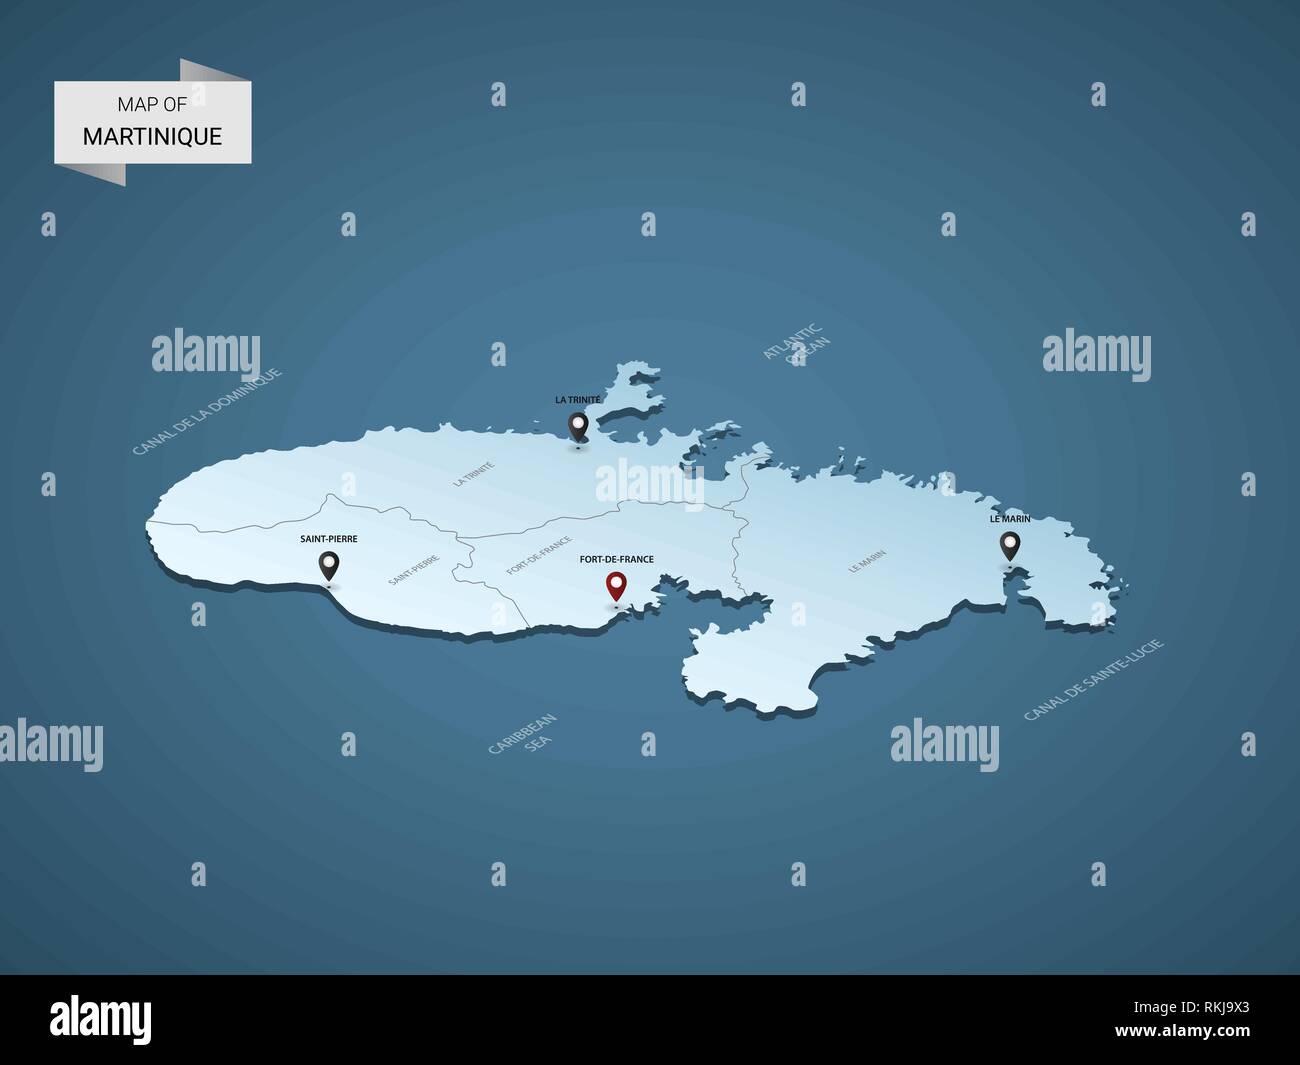 3D isométrique Martinique site, vecteur illustration avec les villes, les frontières, les capitaux, les divisions administratives et marques ; pointeur fond bleu dégradé. Illustration de Vecteur